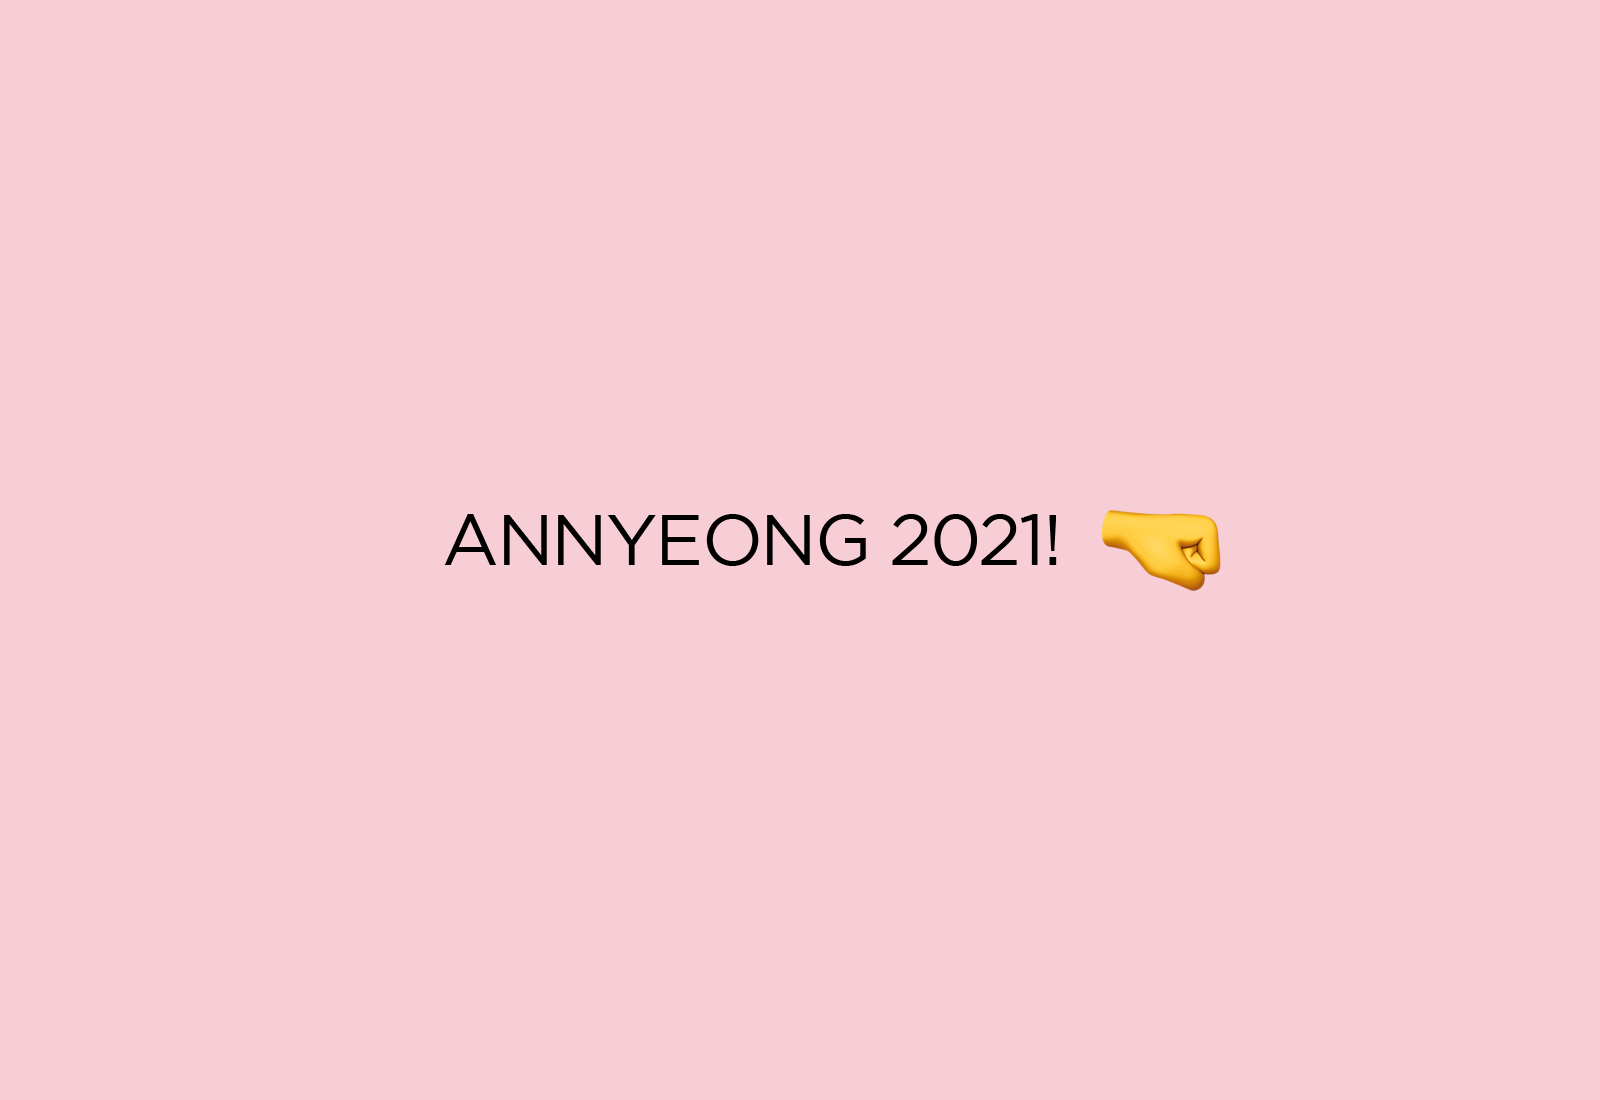 Annyeong 2021, Annyeong 2022!